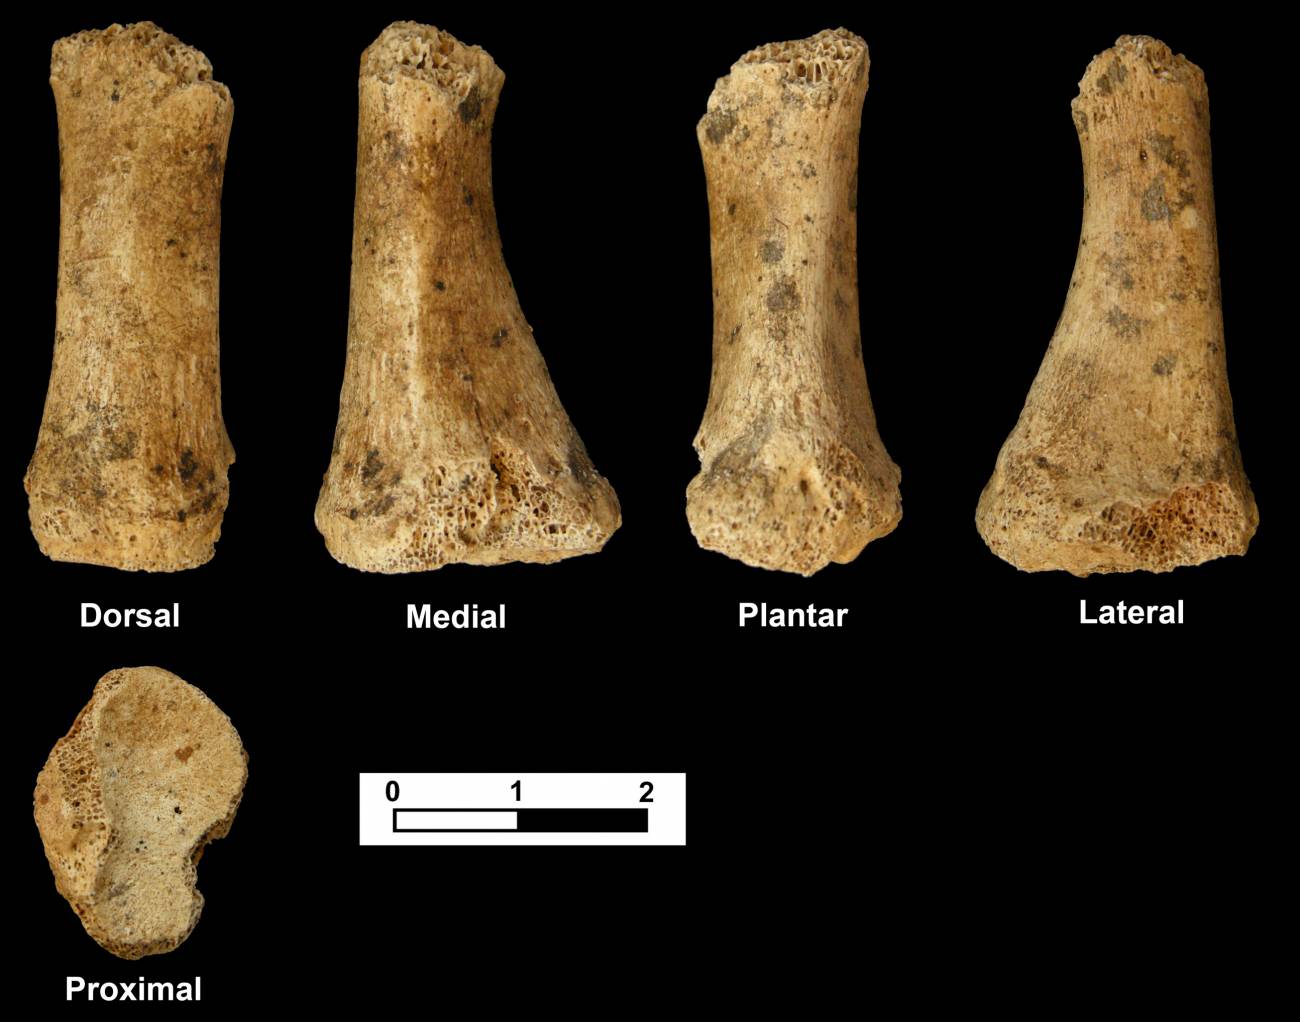 Metatarsiano encontrado, que corresponde al dedo pulgar del pie izquierdo de un adulto neandertal. Imagen: Jesús F. Jordá Pardo.